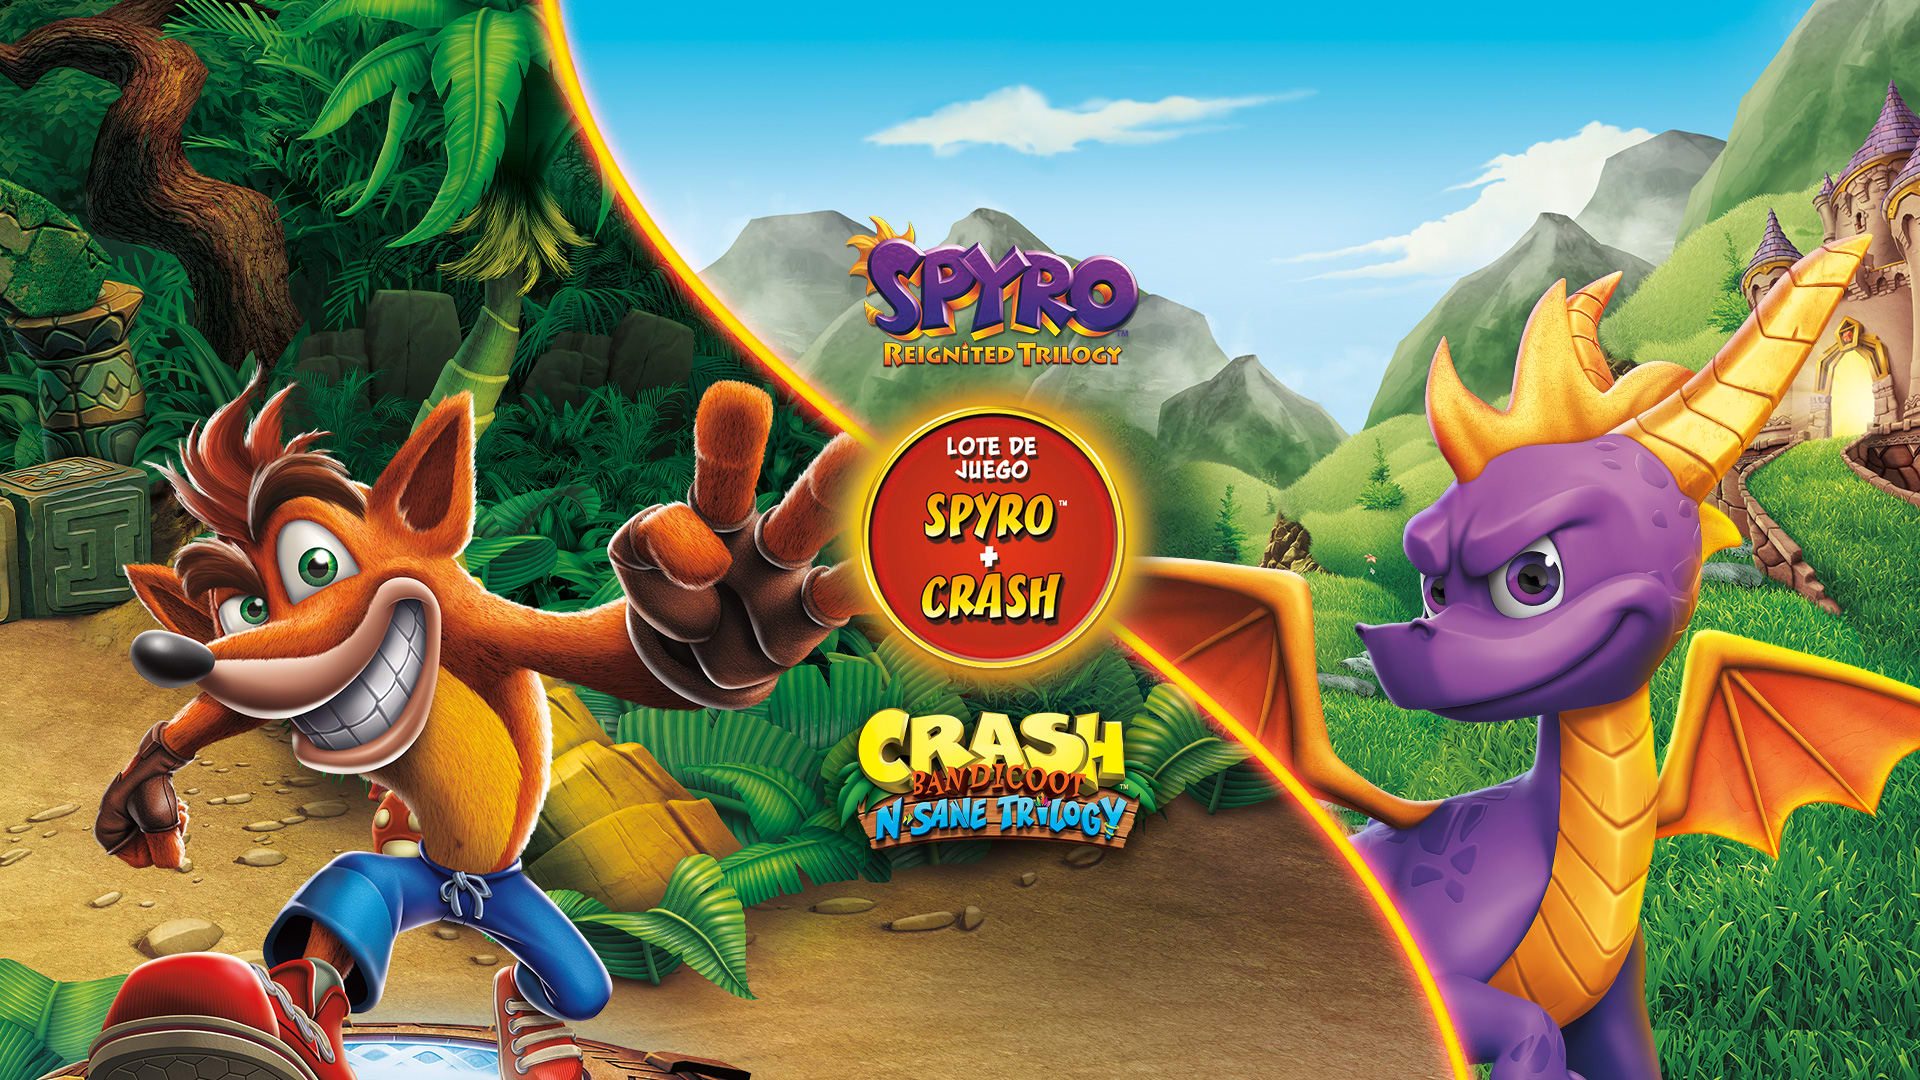 Lote de juego Spyro™ + Crash Remastered